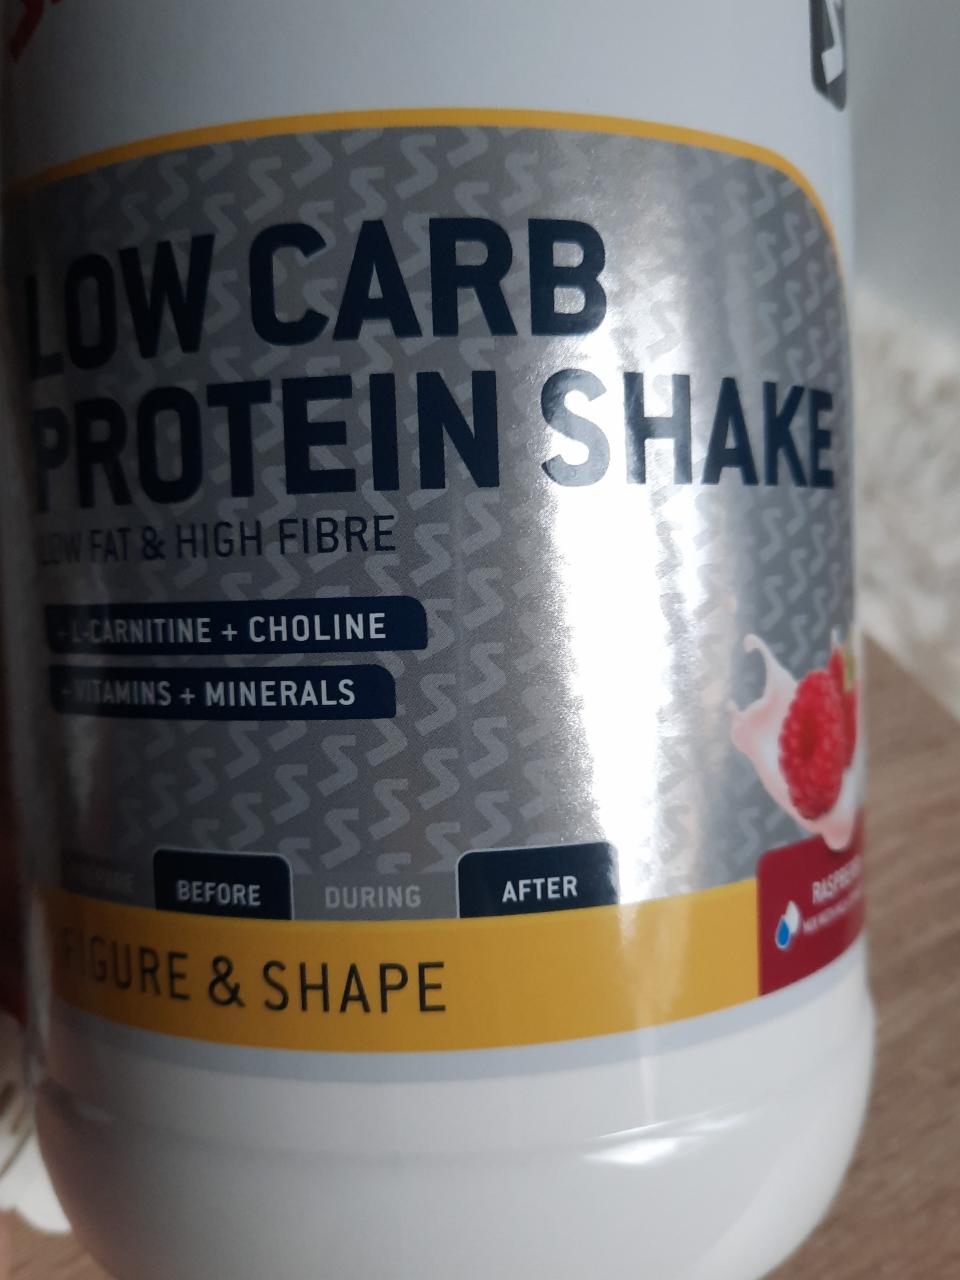 Fotografie - Low carb protein shake rasberry